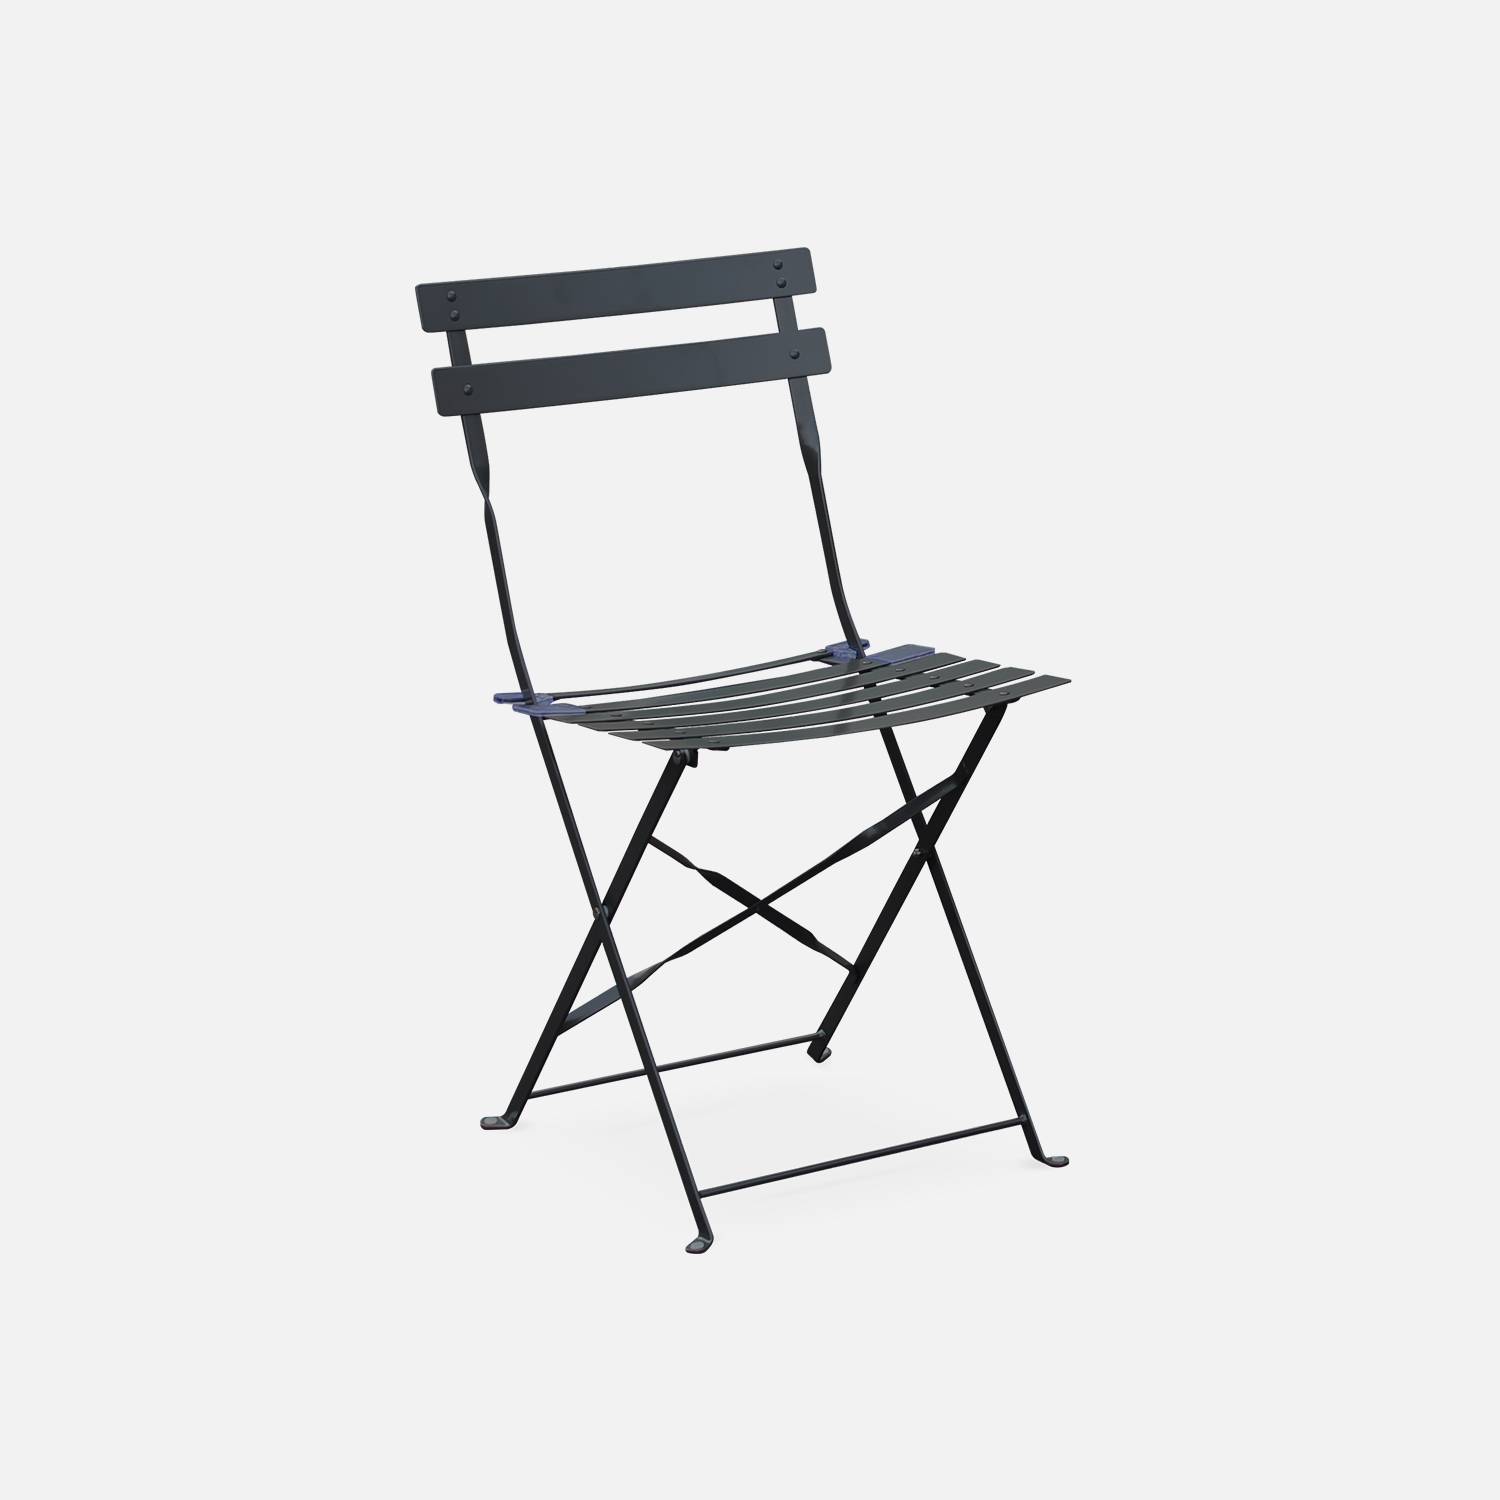 Mobiliario de jardín plegable para bistró - Emilia redondo gris antracita - Mesa de Ø60 cm con dos sillas plegables, acero pintado en polvo Photo4